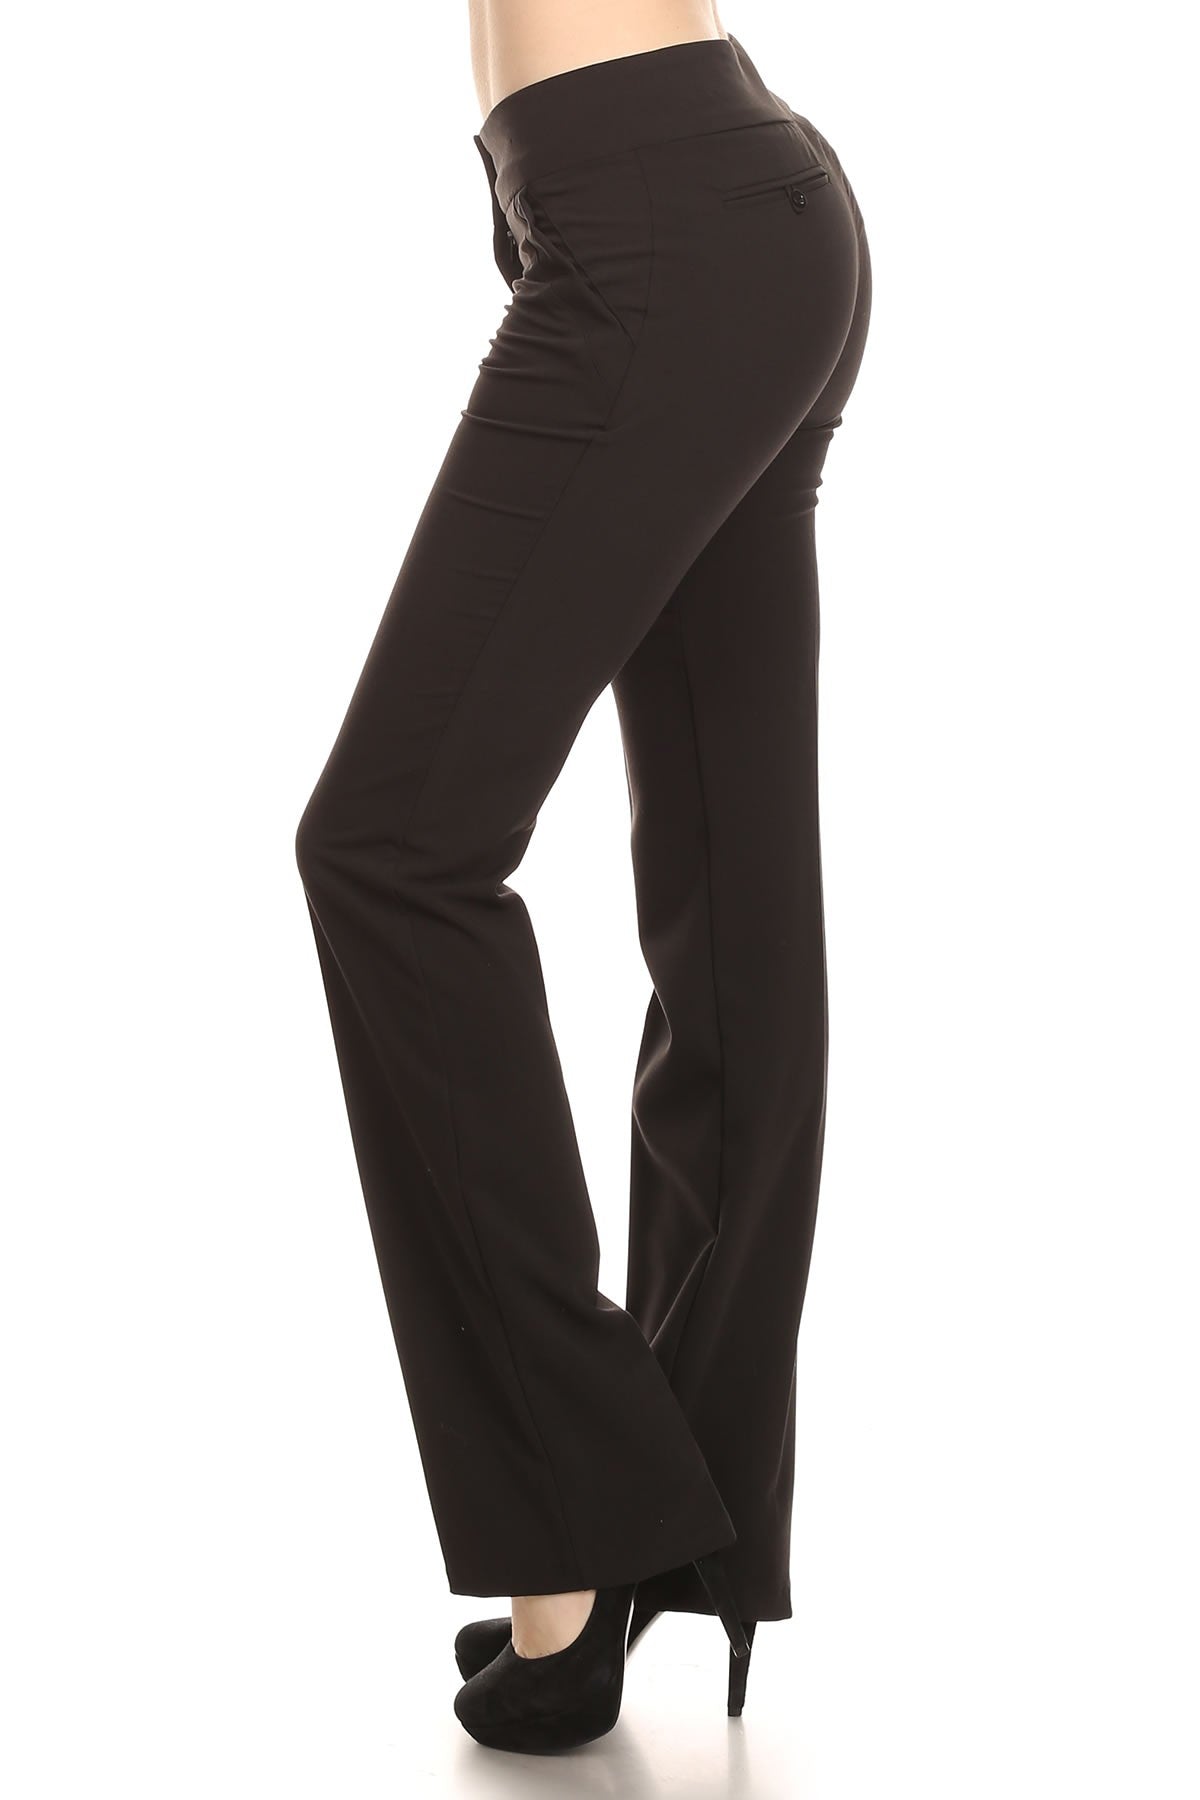 Women's Black Dress Pants untuk dijual di Ottawa, Ontario